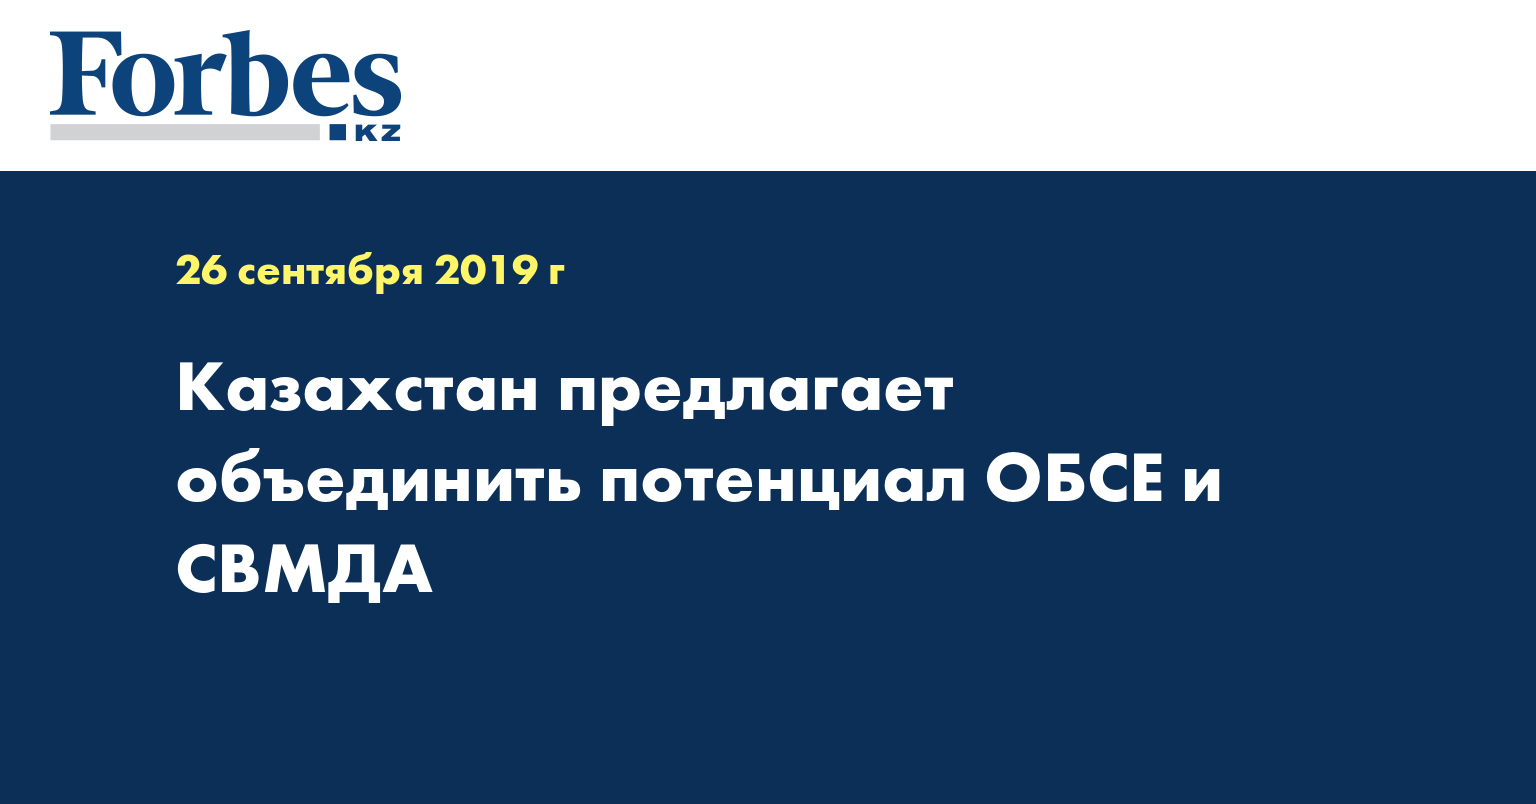 Казахстан предлагает объединить потенциал ОБСЕ и СВМДА